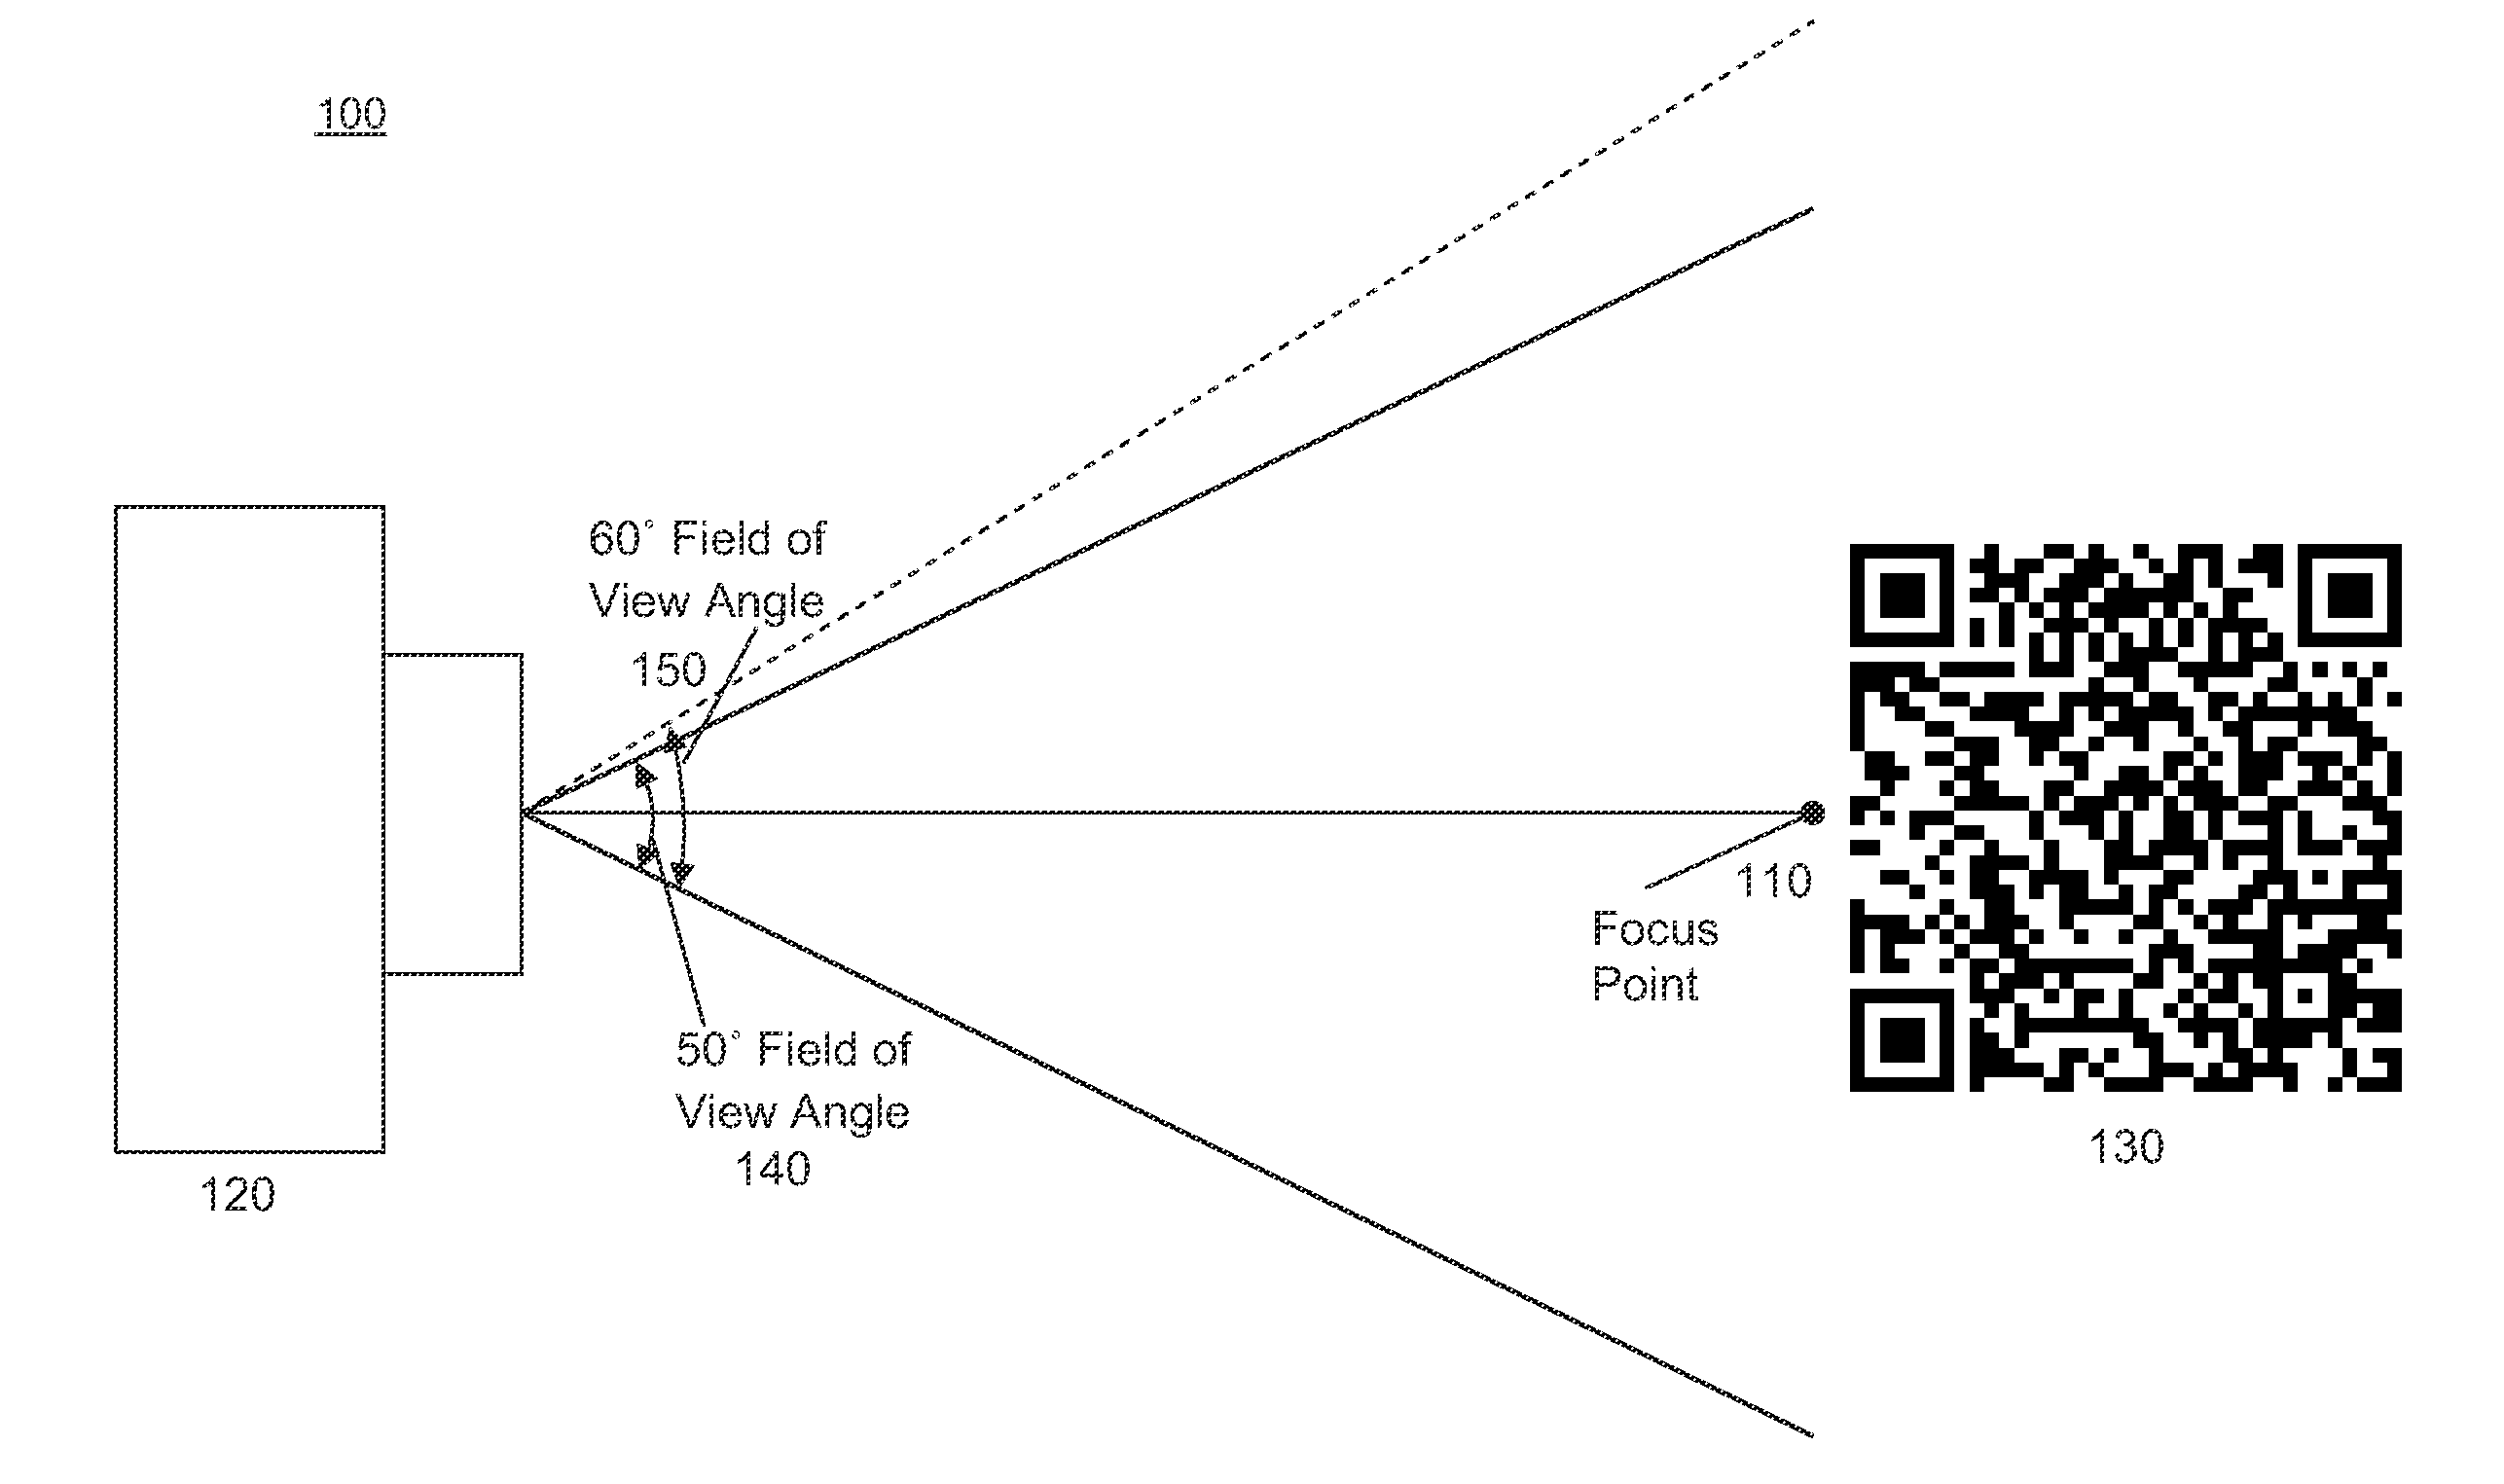 Method of improving decoding speed based on off-the-shelf camera phone